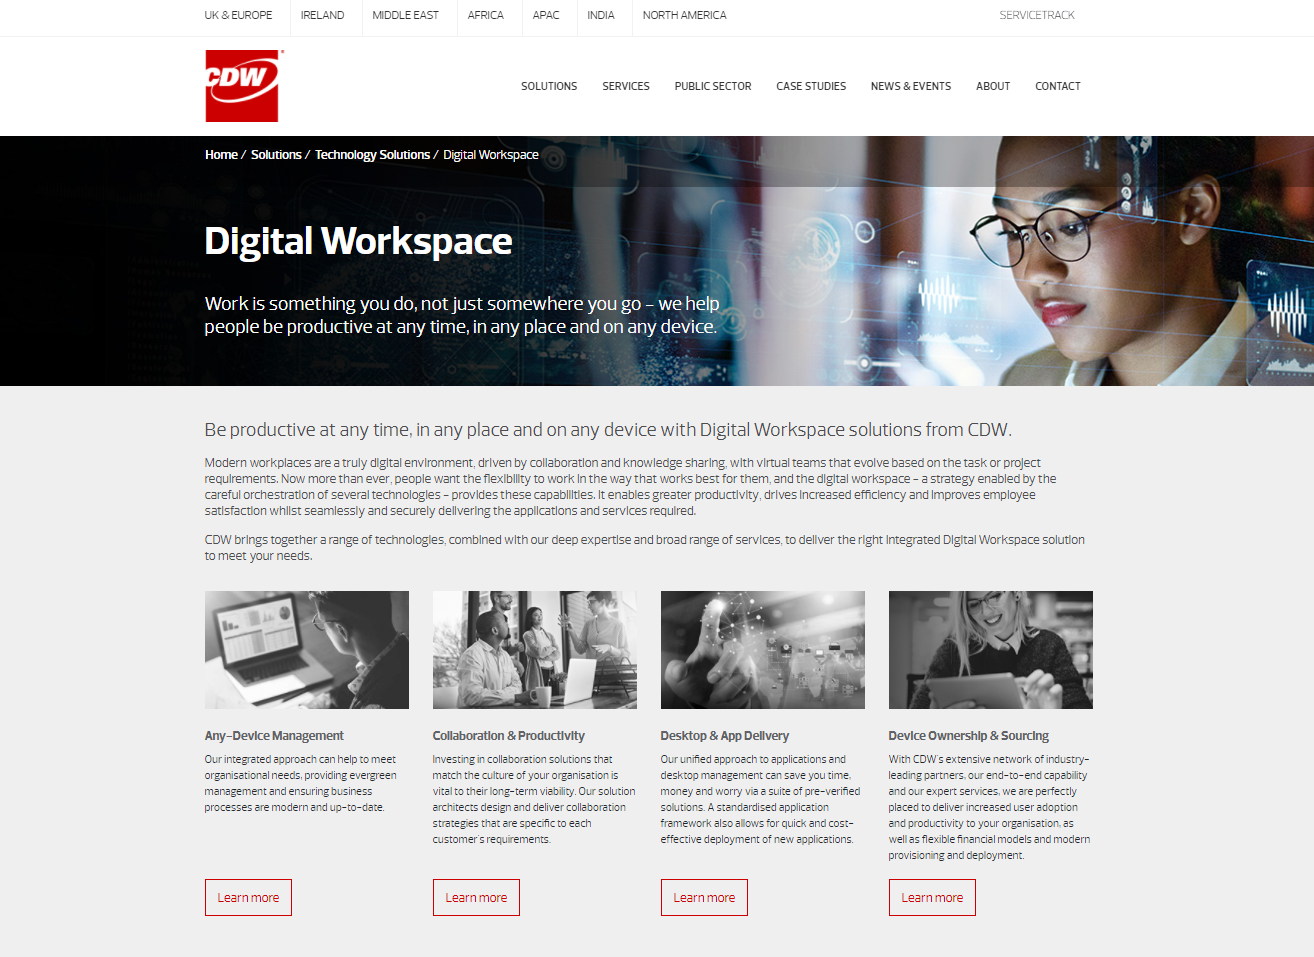 <b>CDW</b>: Digital Workspace